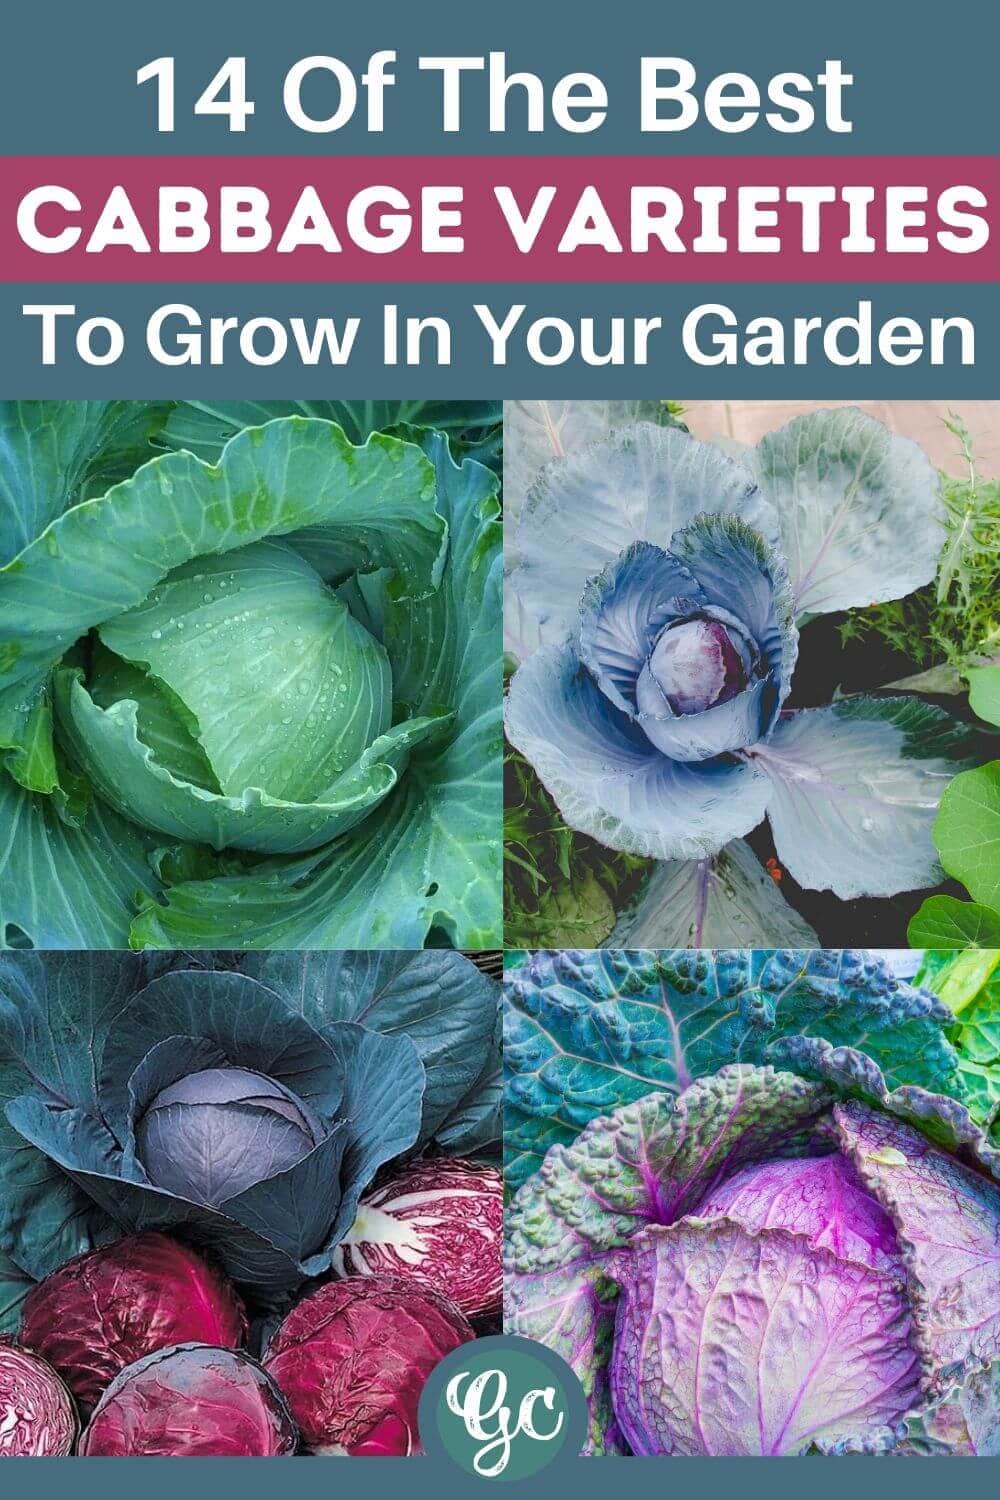  14 различитих врста укусних сорти купуса за узгој у вашој башти